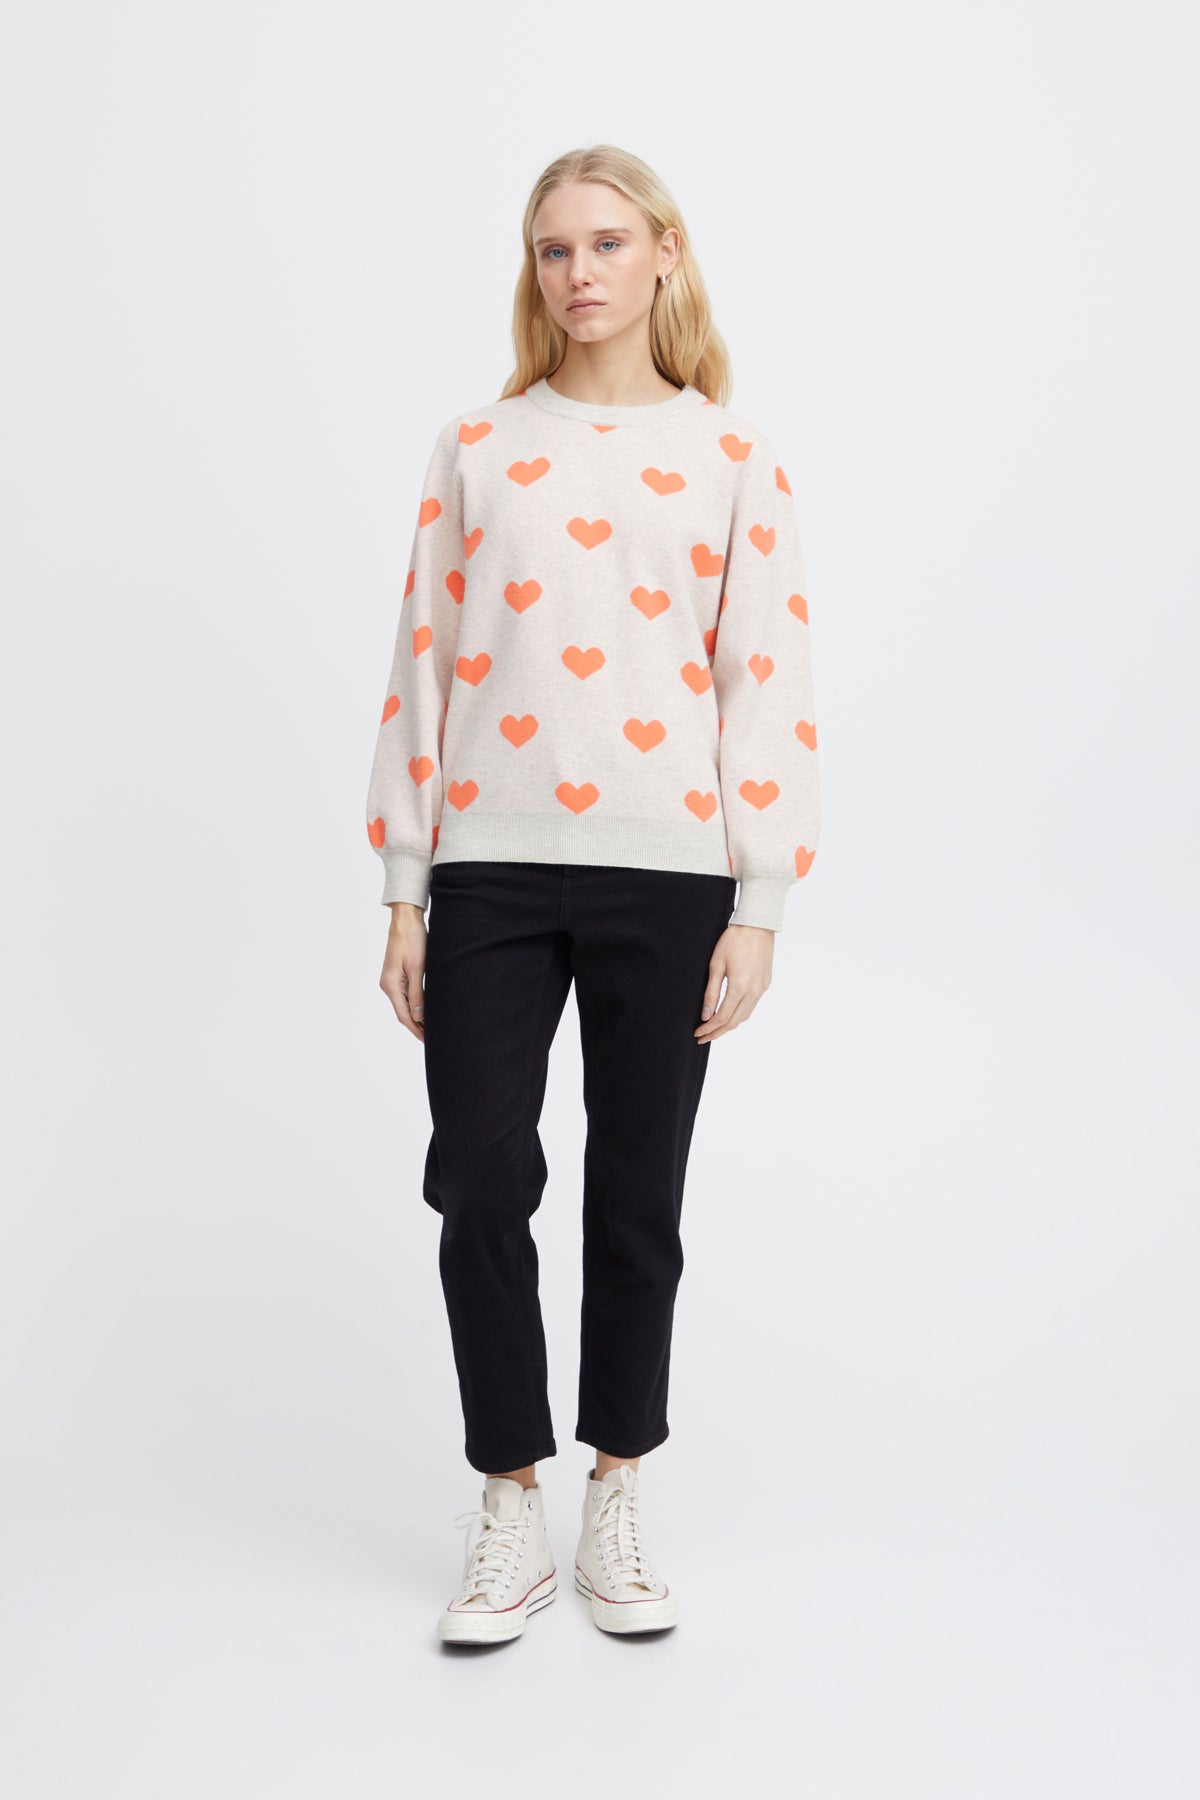 Brielle Heart Sweatshirt in Oatmeal/Hot Coral